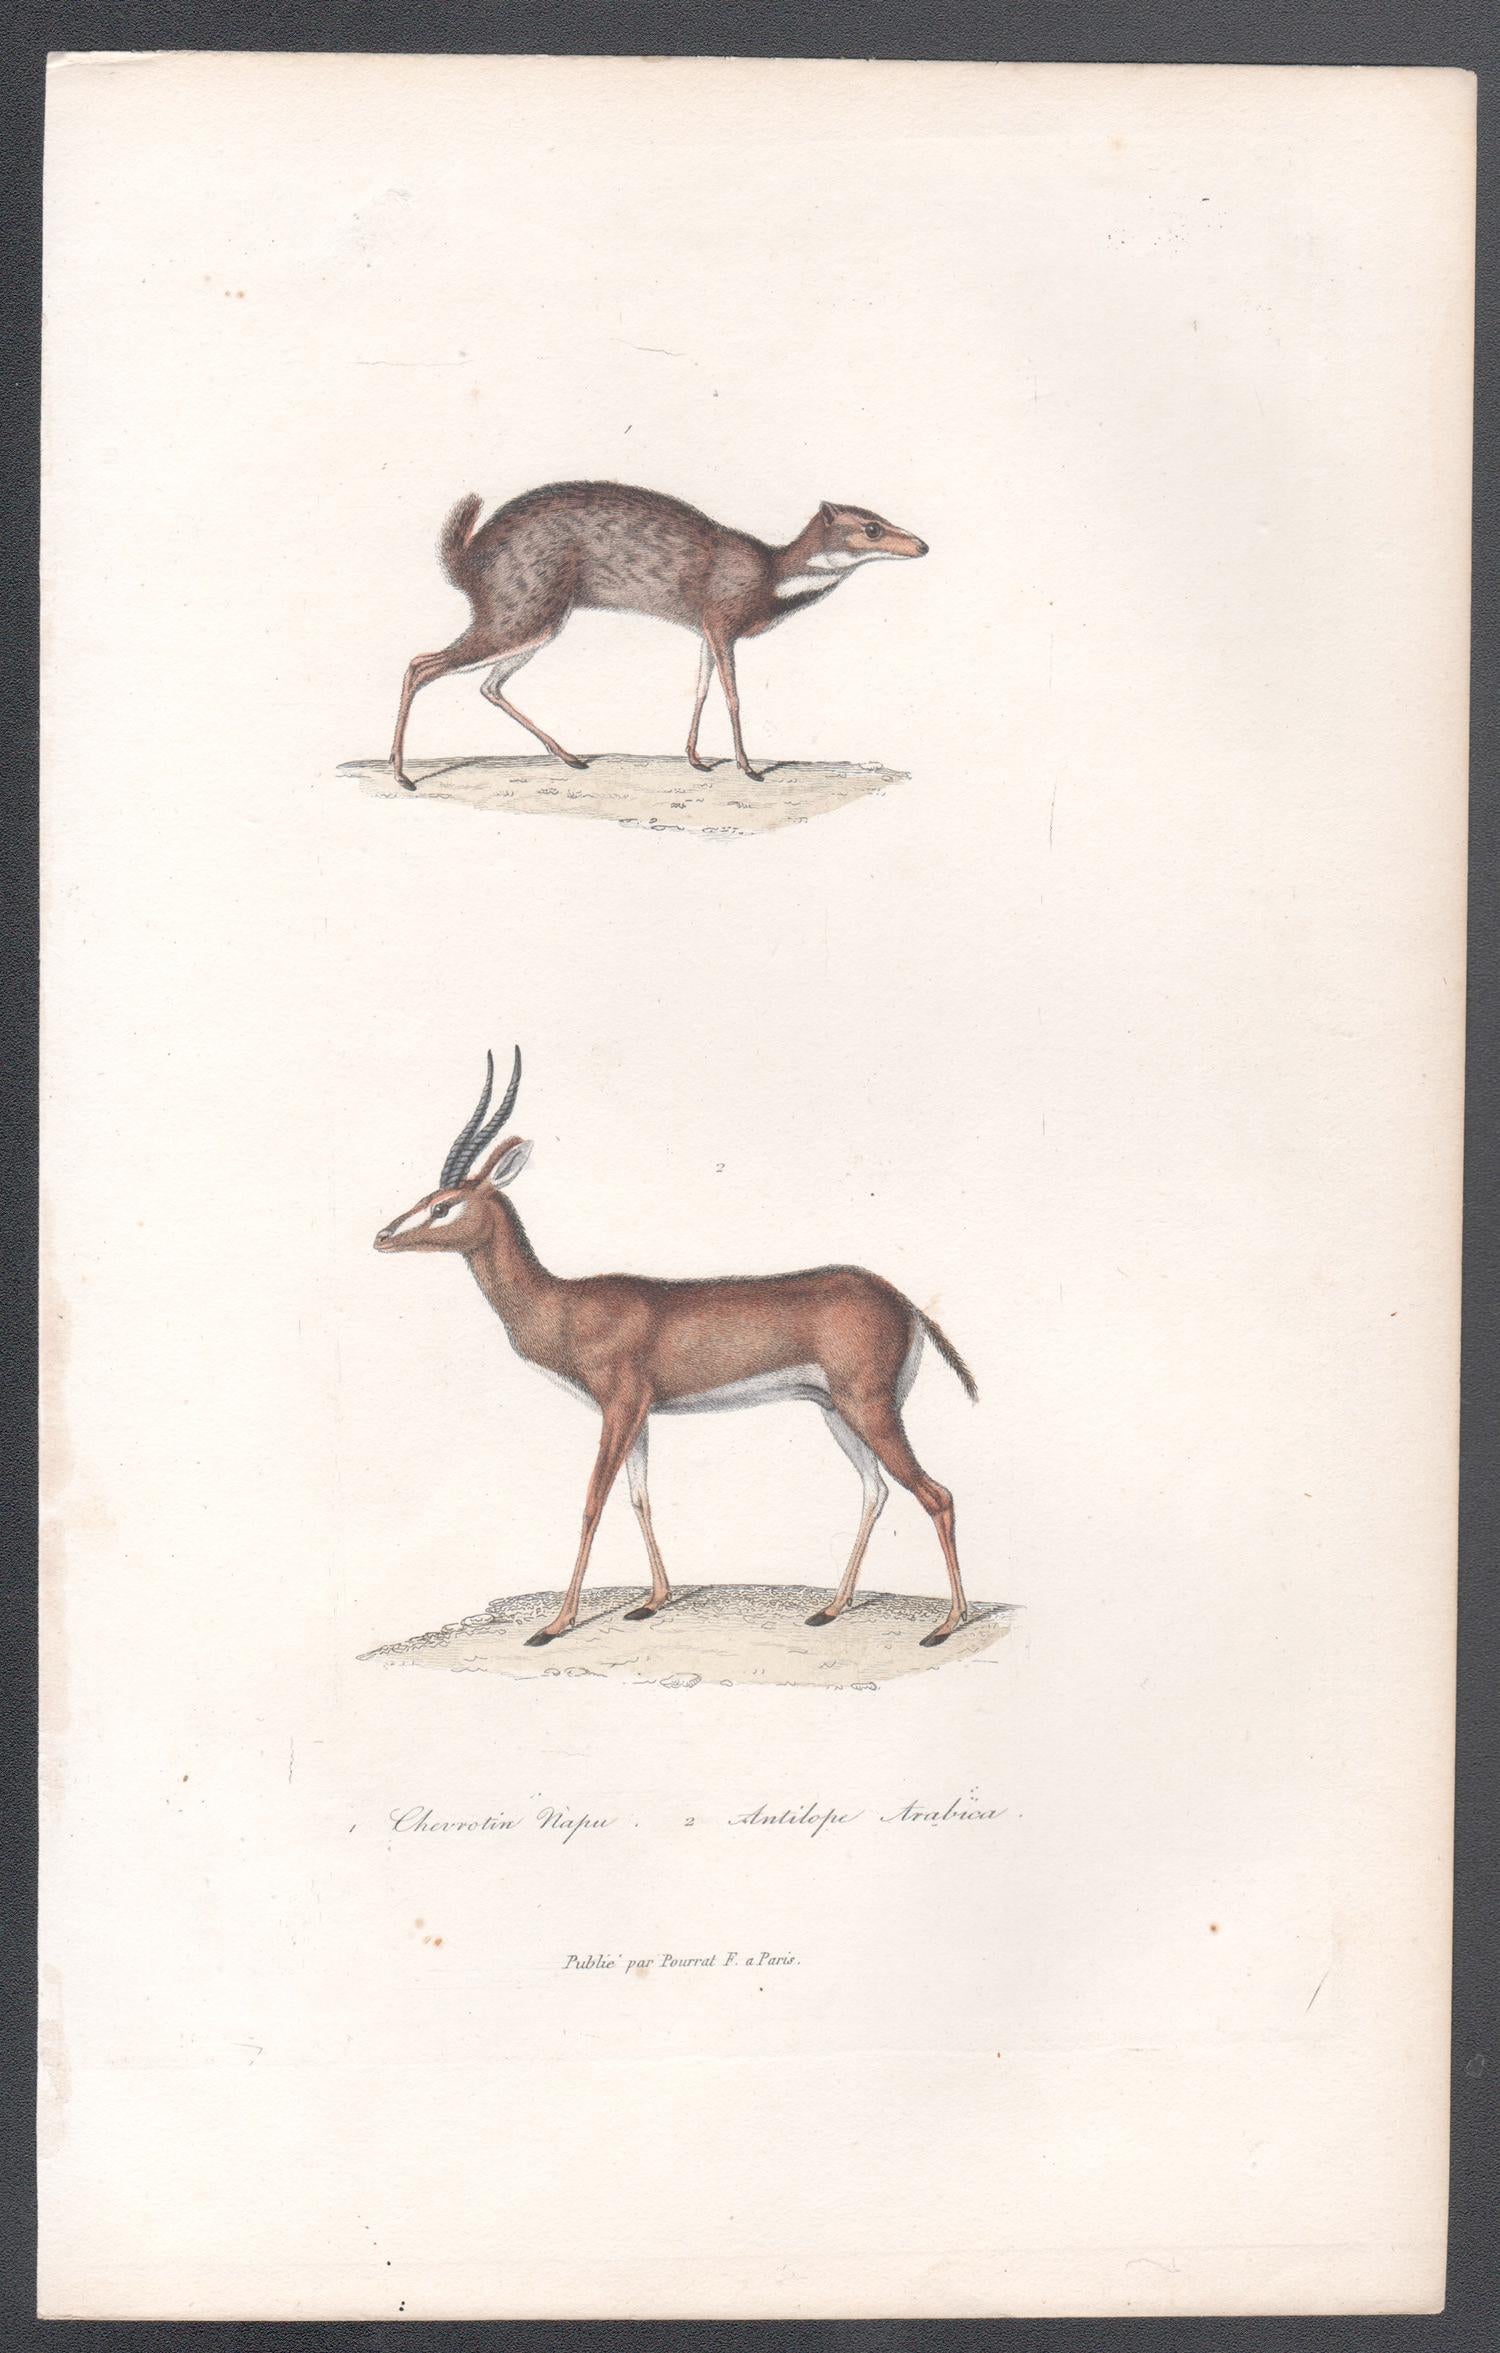 Tierstiche von Chevrotain und Araber Antelope, Tiergravur aus der Mitte des 19. Jahrhunderts – Print von Unknown